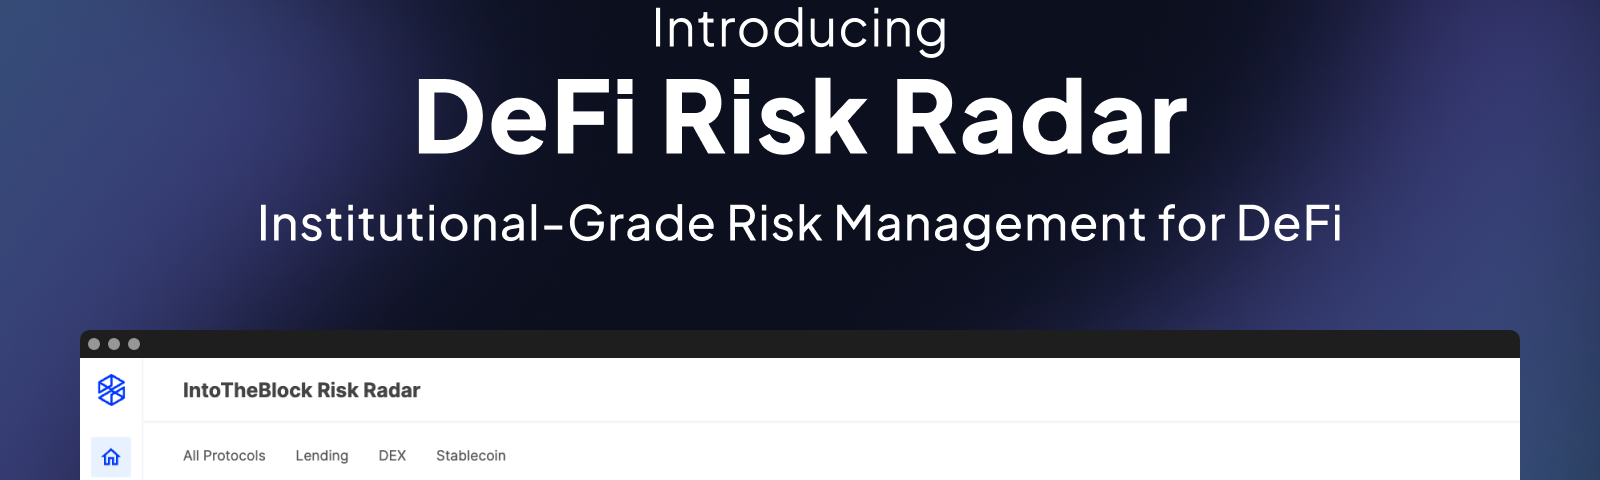 Introducing defi risk radar for institutional-grade risk management for DeFi